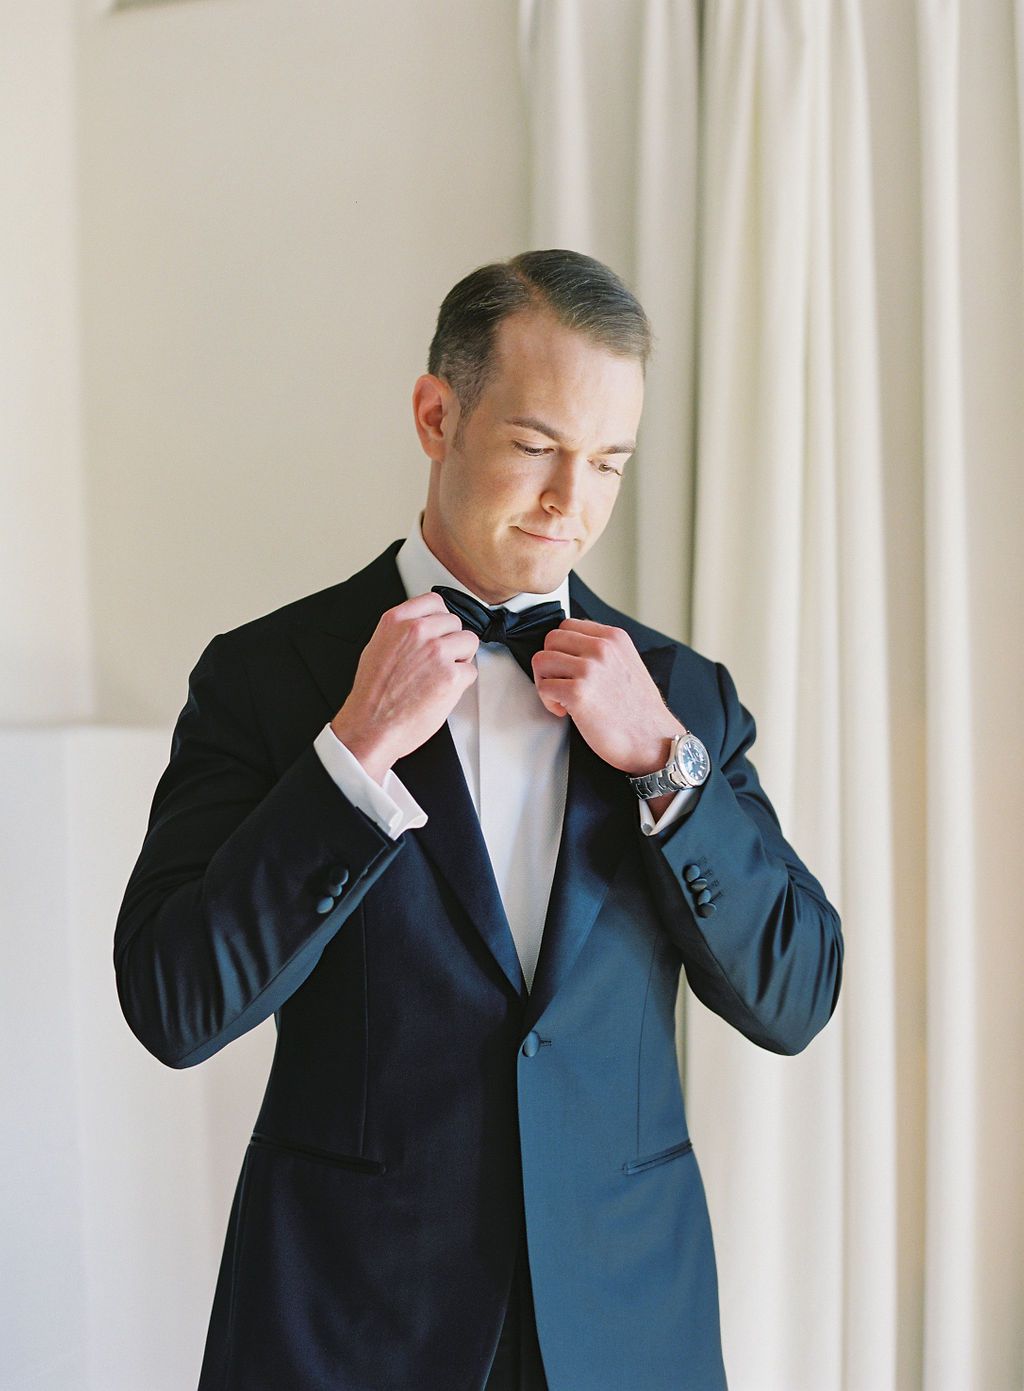 groom in black tux adjusting bowtie